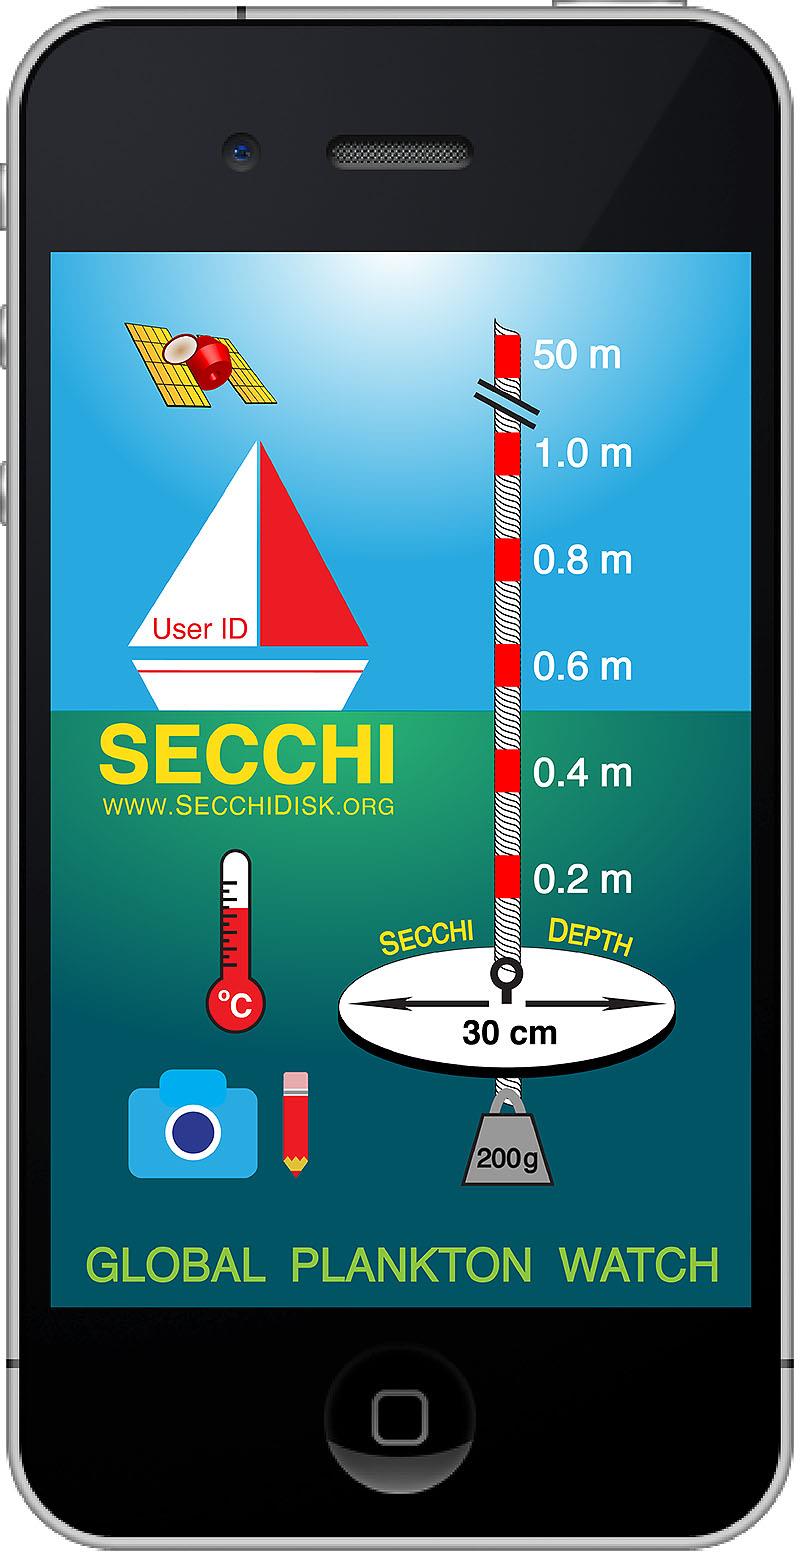 Home page of the Secchi App - photo © Secchi Disk Study